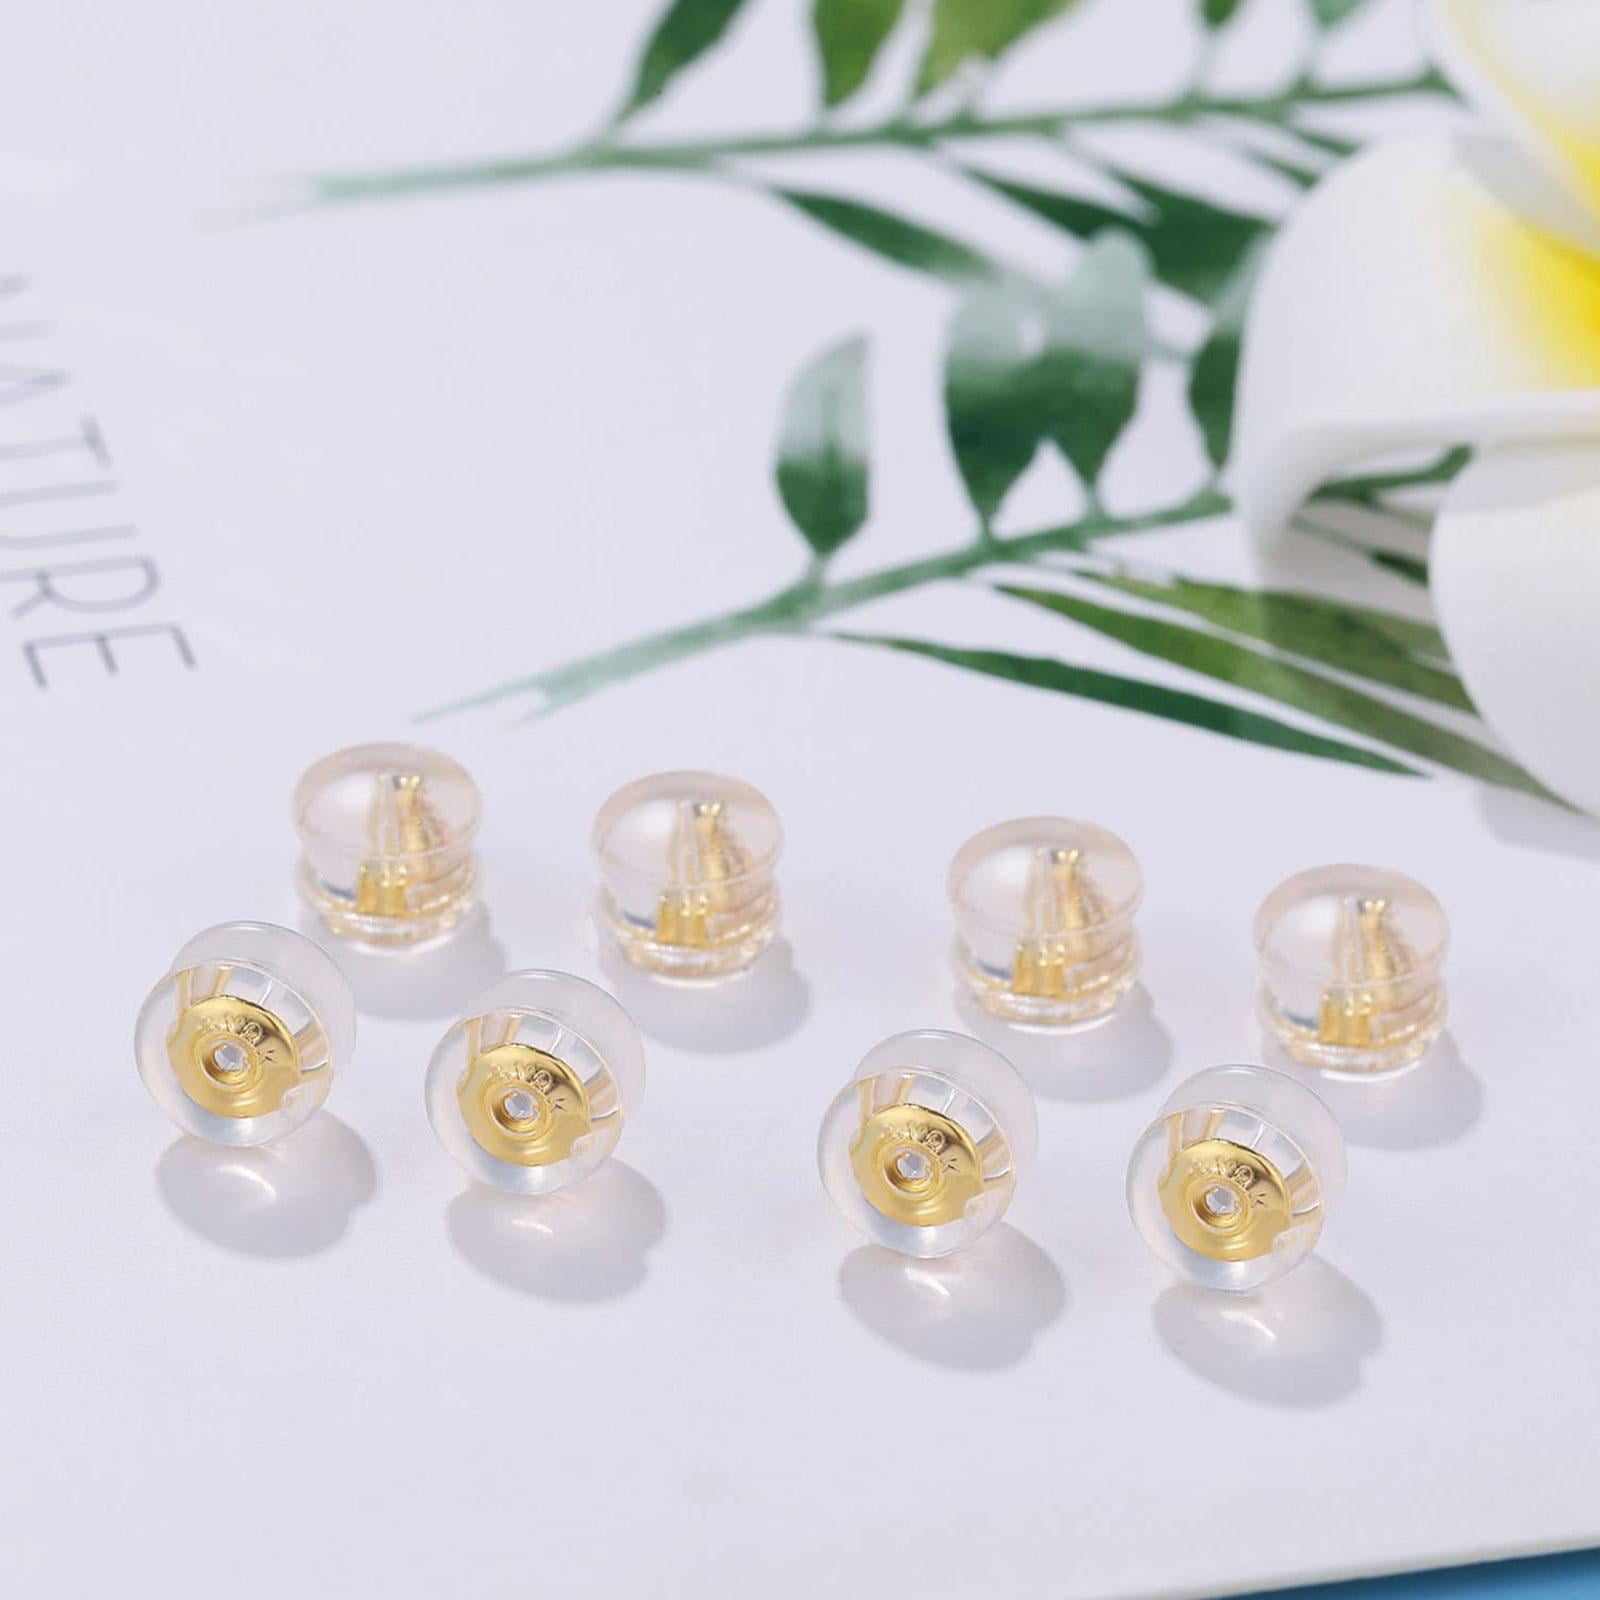 YOIHUR Locking Earring Backs for Studs,18k Gold Bullet Earring Backs  Replacements for Studs, Secure Locking Backing for Sensitive Ears(Gold 4  Pairs)